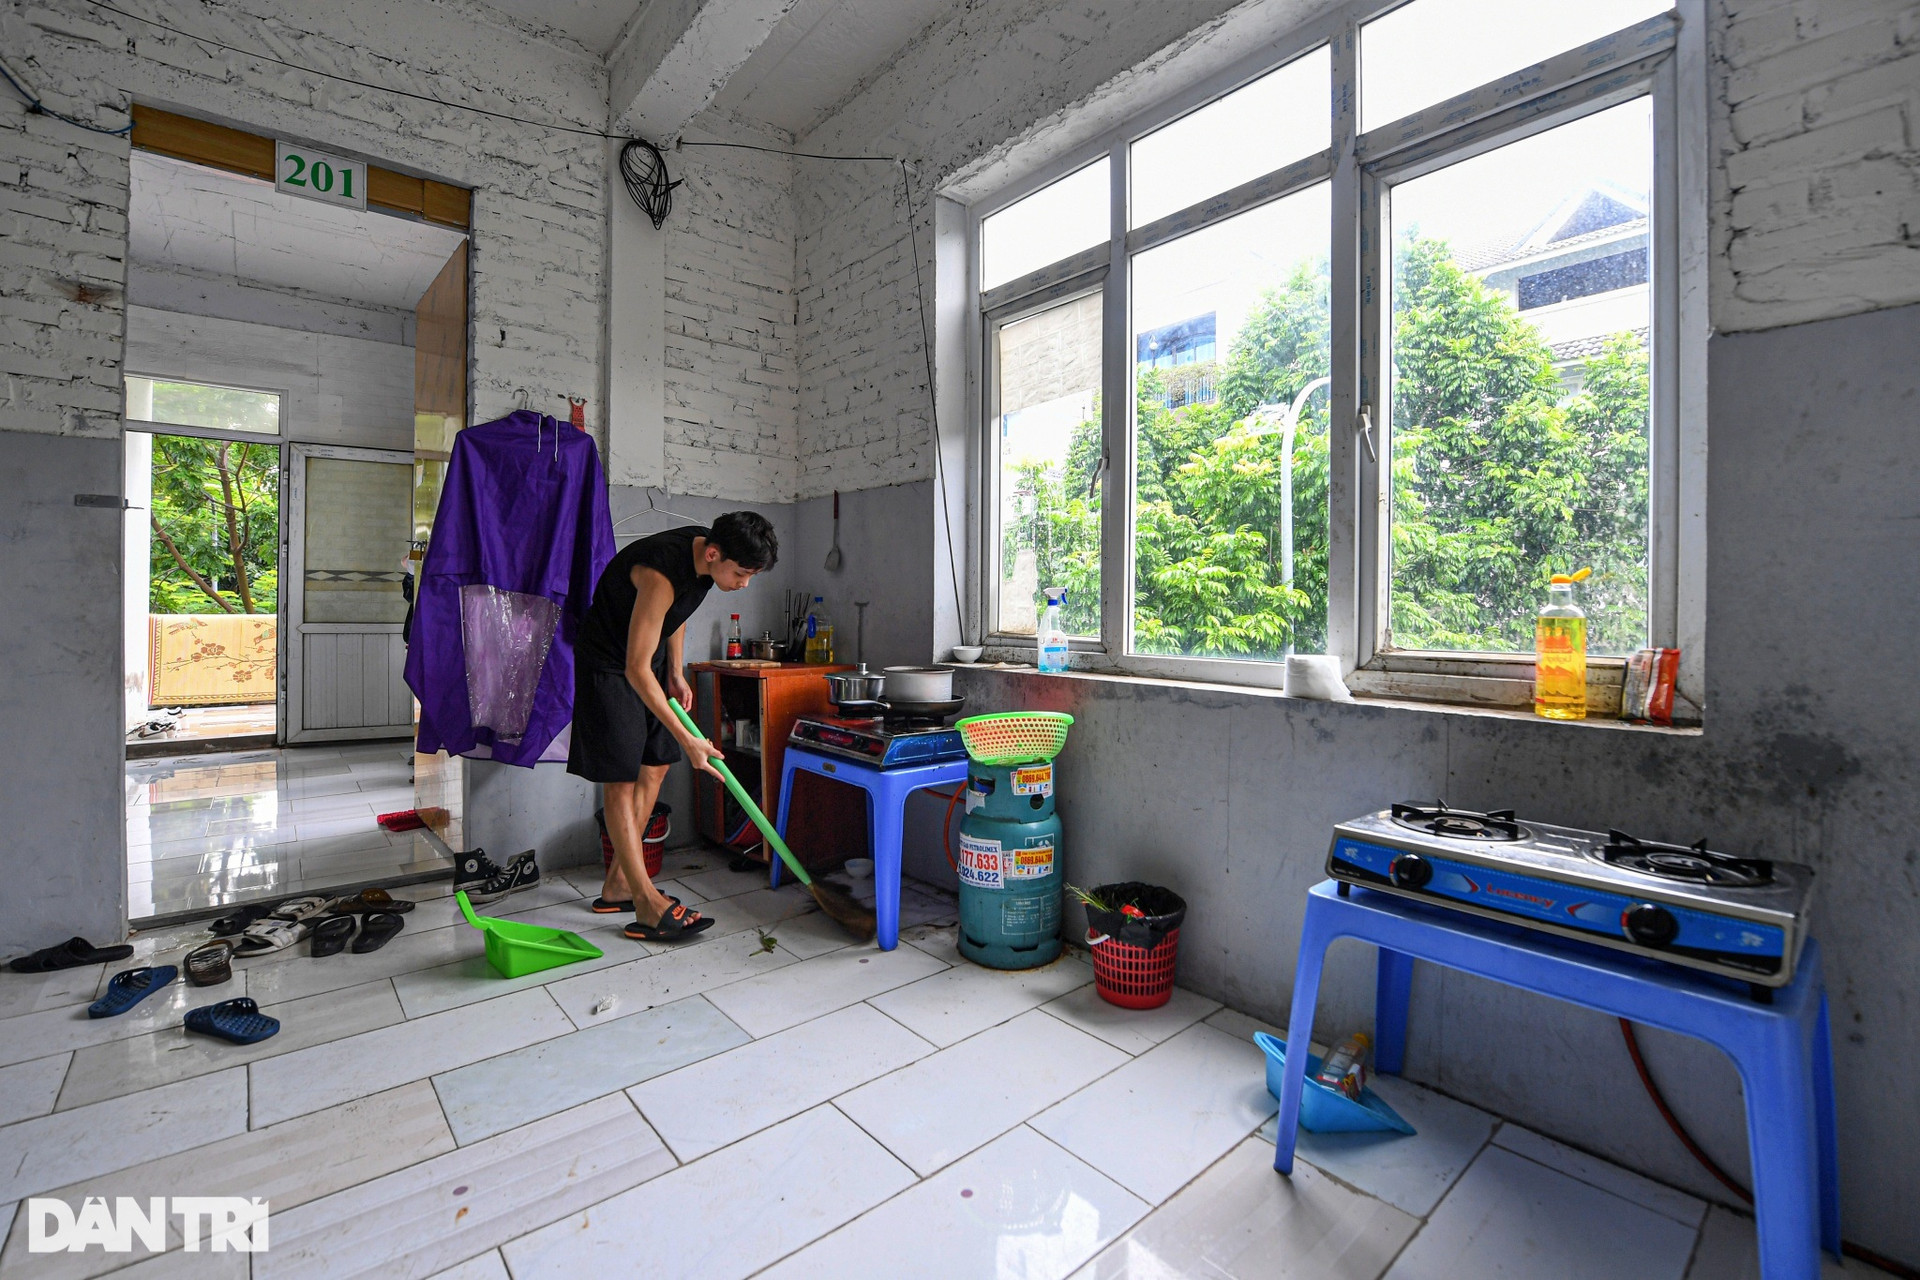 Cuộc sống thuê trọ trong các biệt thự triệu USD bỏ hoang ở Hà Nội - 10